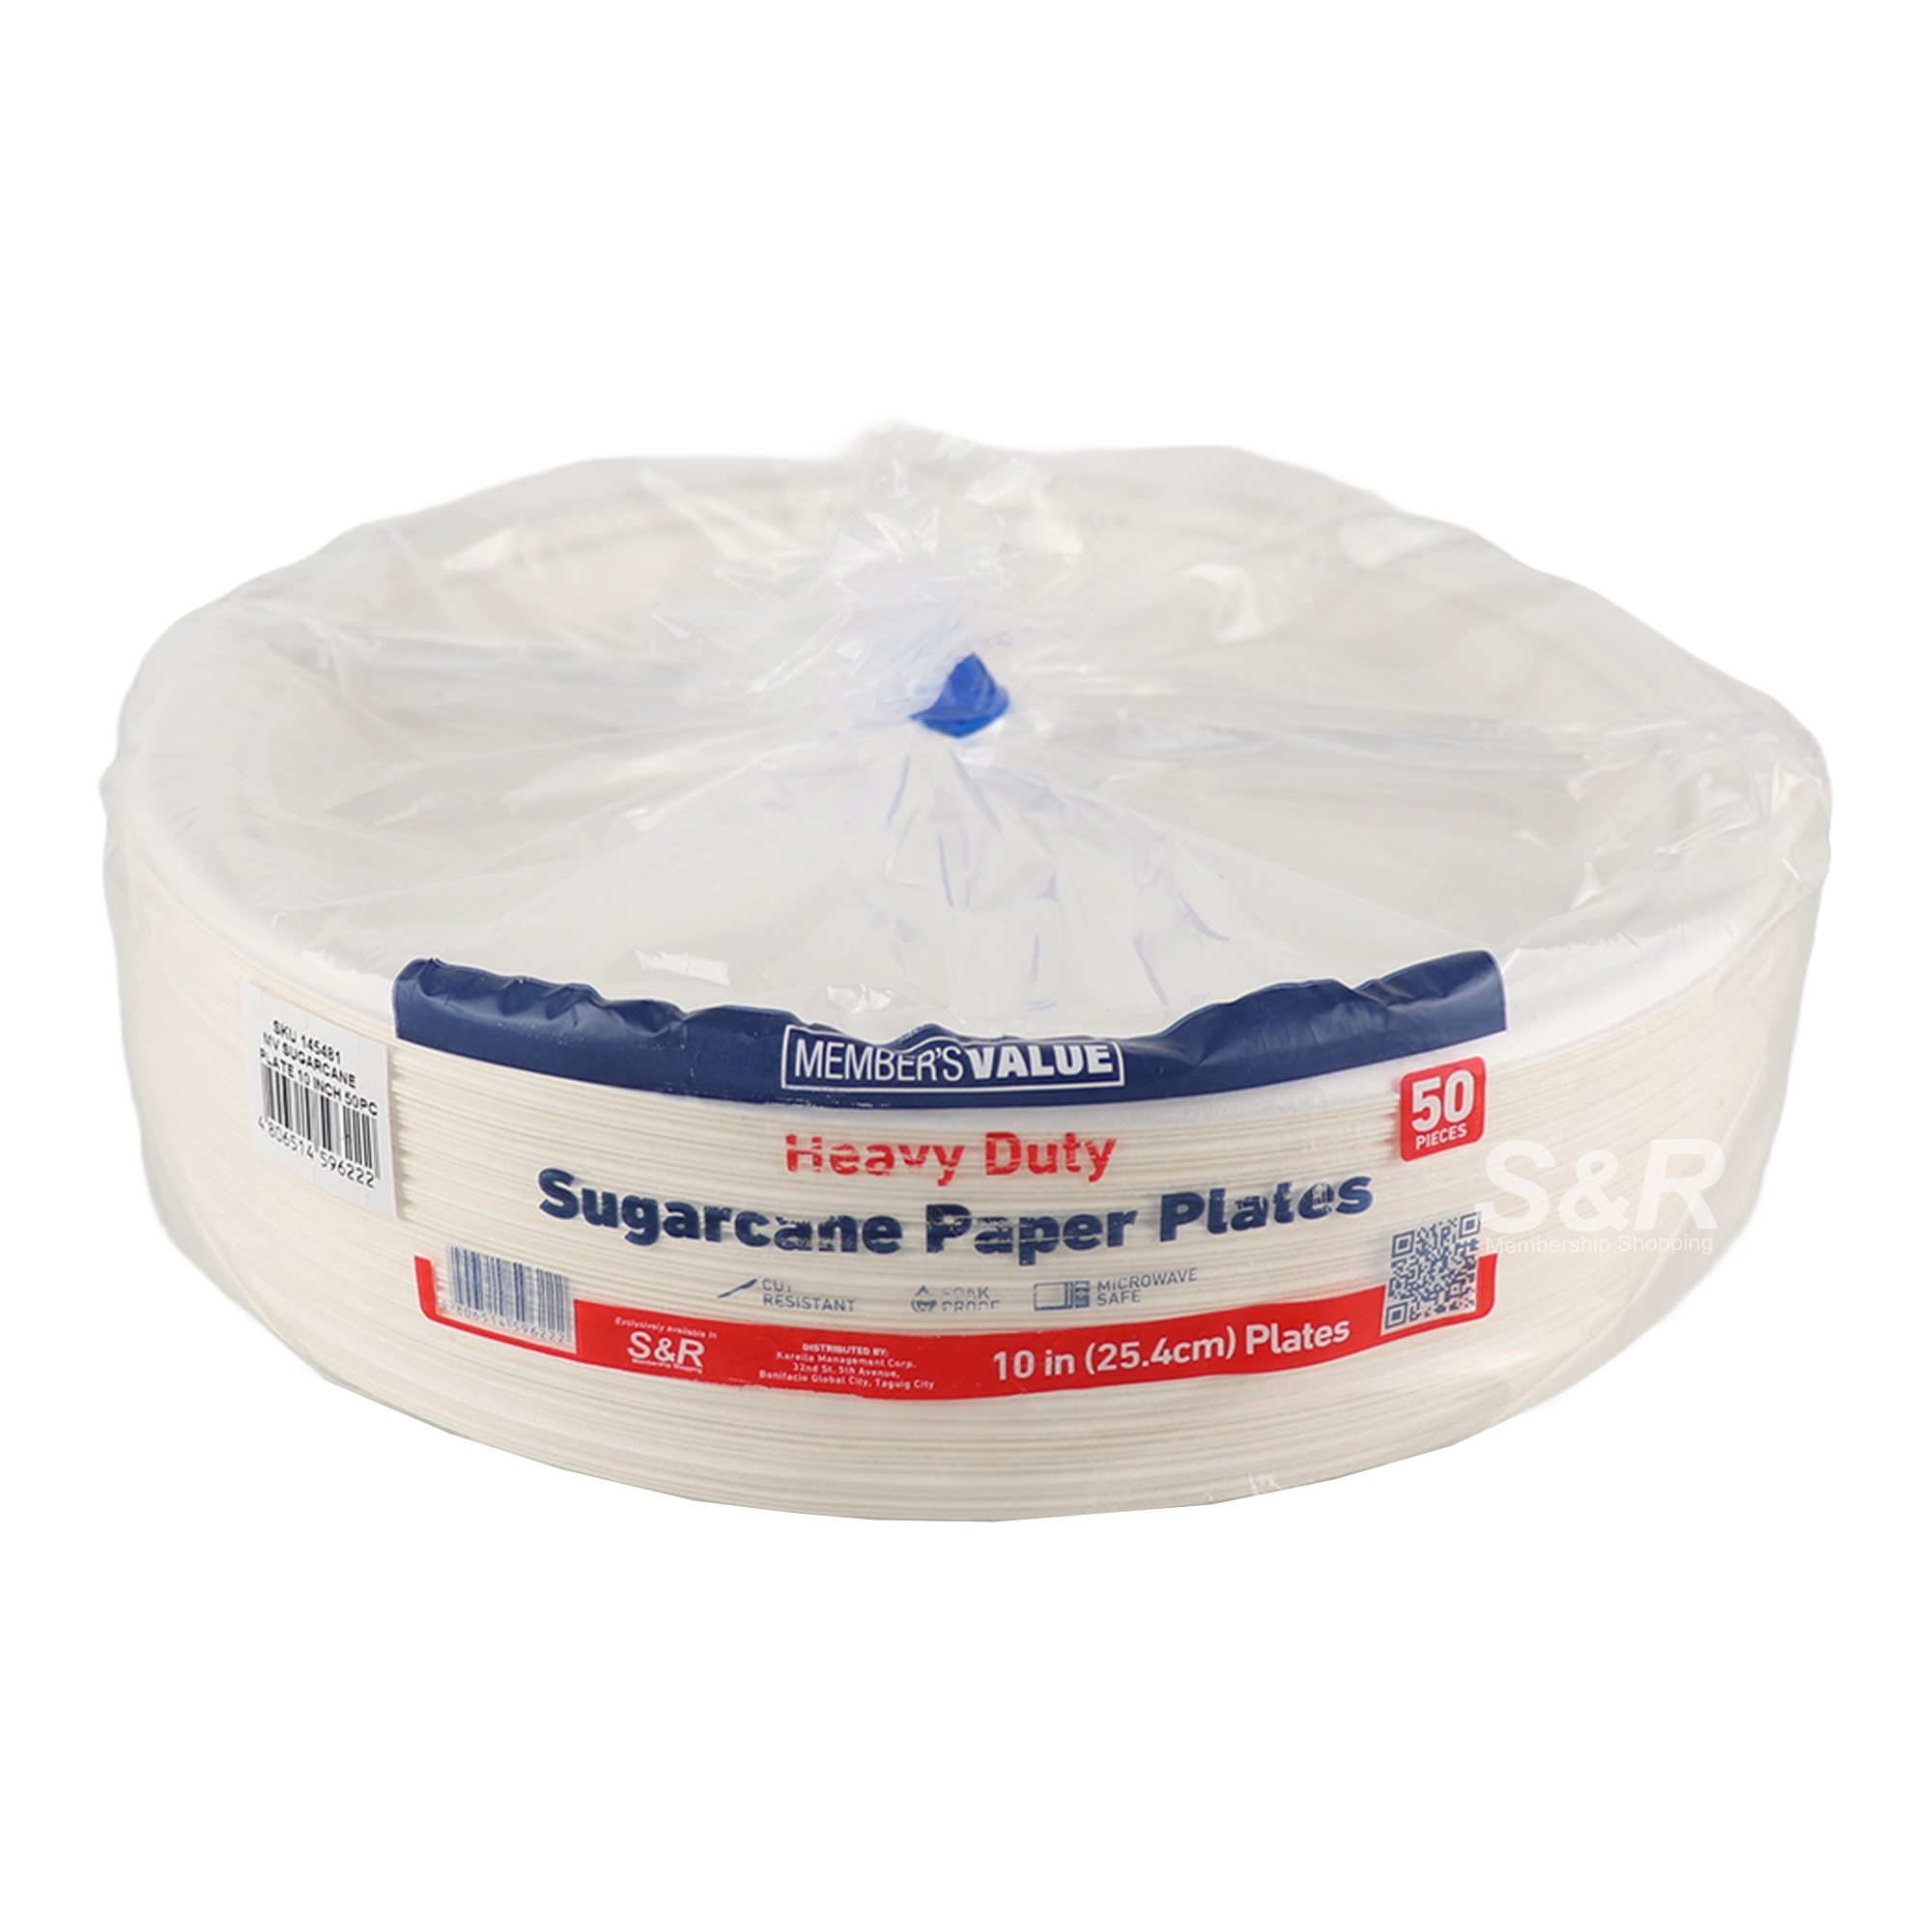 Member's Value Sugarcane Paper Plates 50pcs